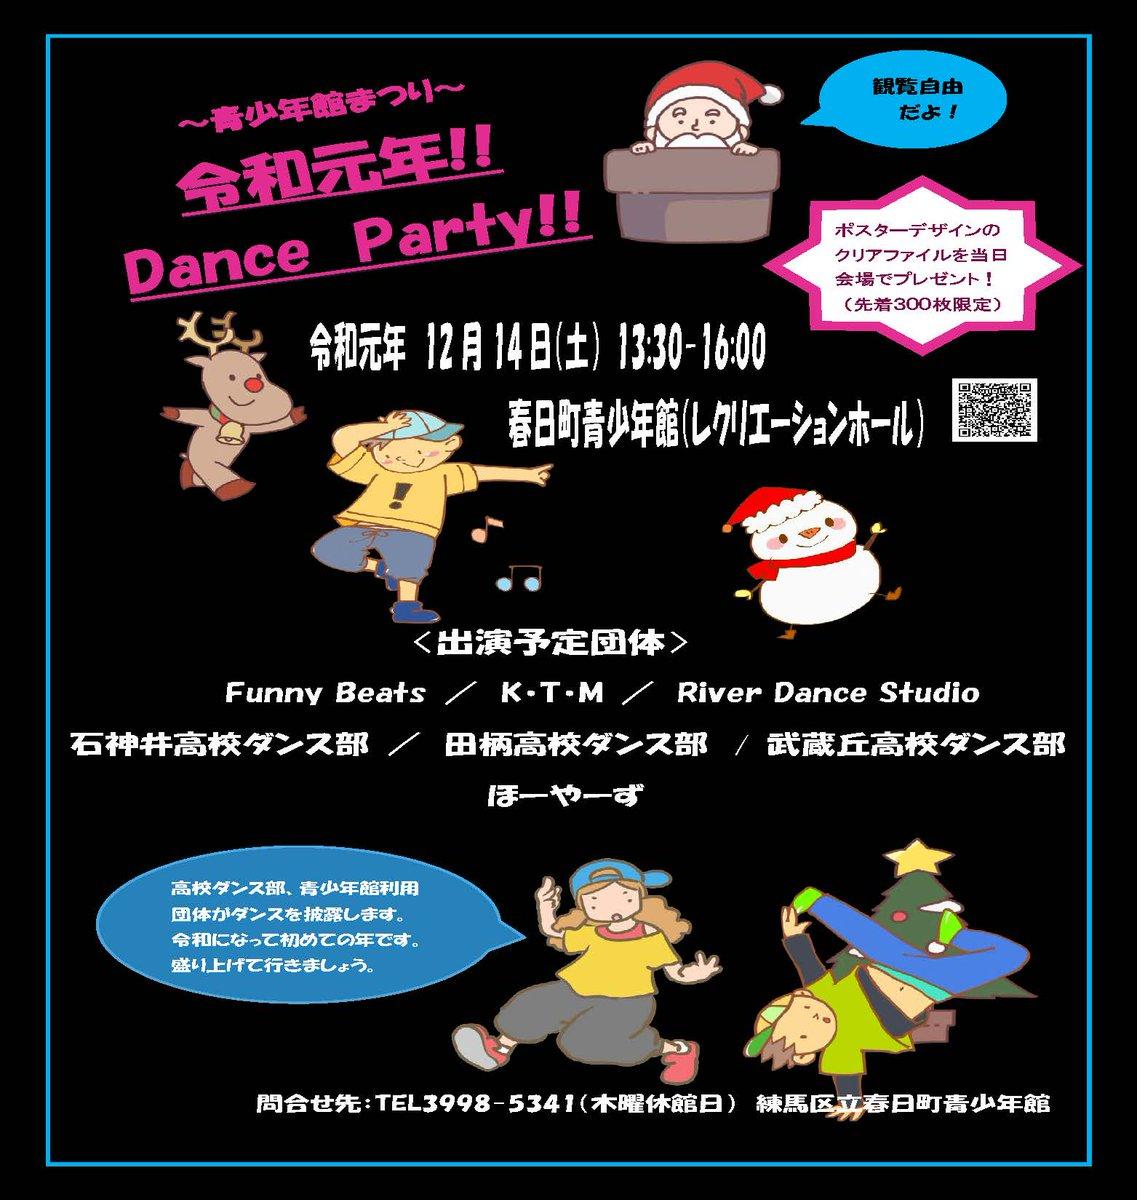 令和元年 Dance Party